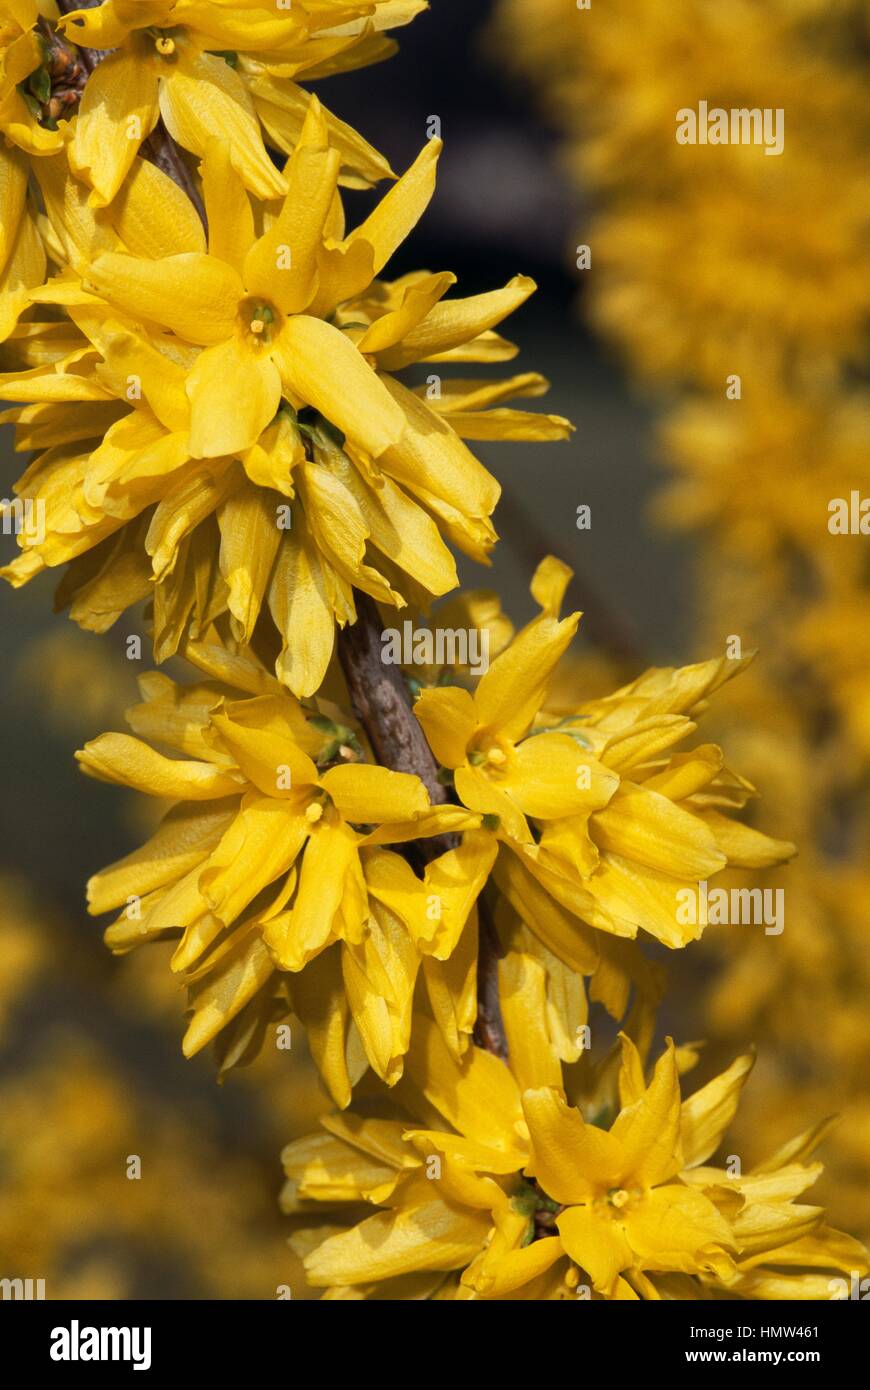 Border forsythia (Forsythia x intermedia Spring Glory), Oleaceae. Stock Photo